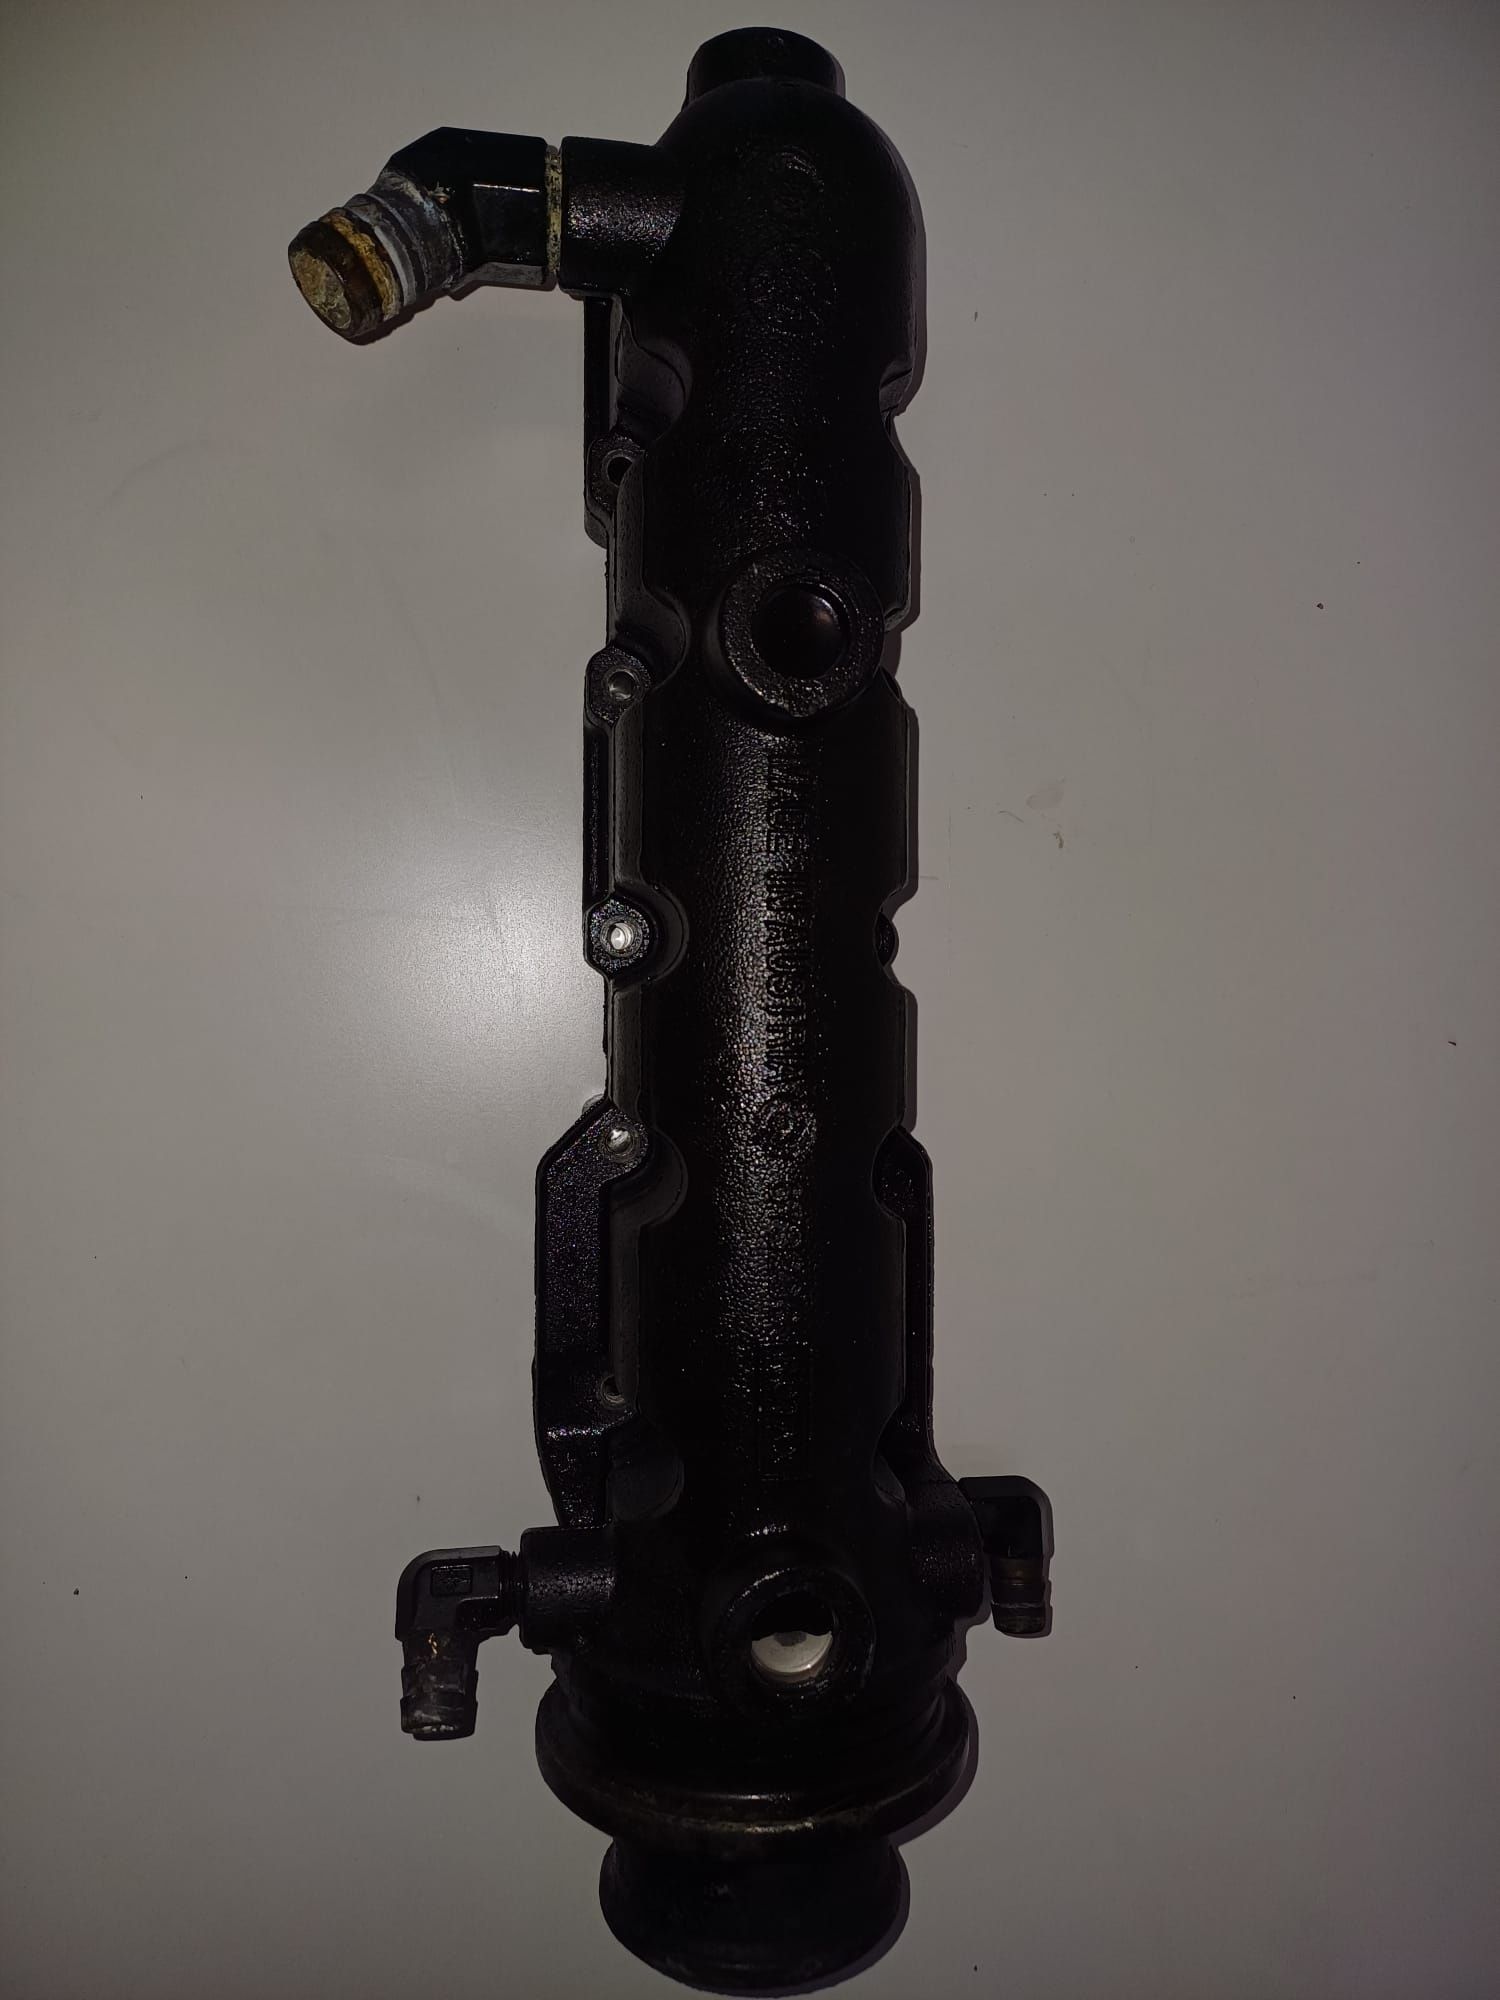 Sea doo części rotax obudowa pompy termostat skuter wodny